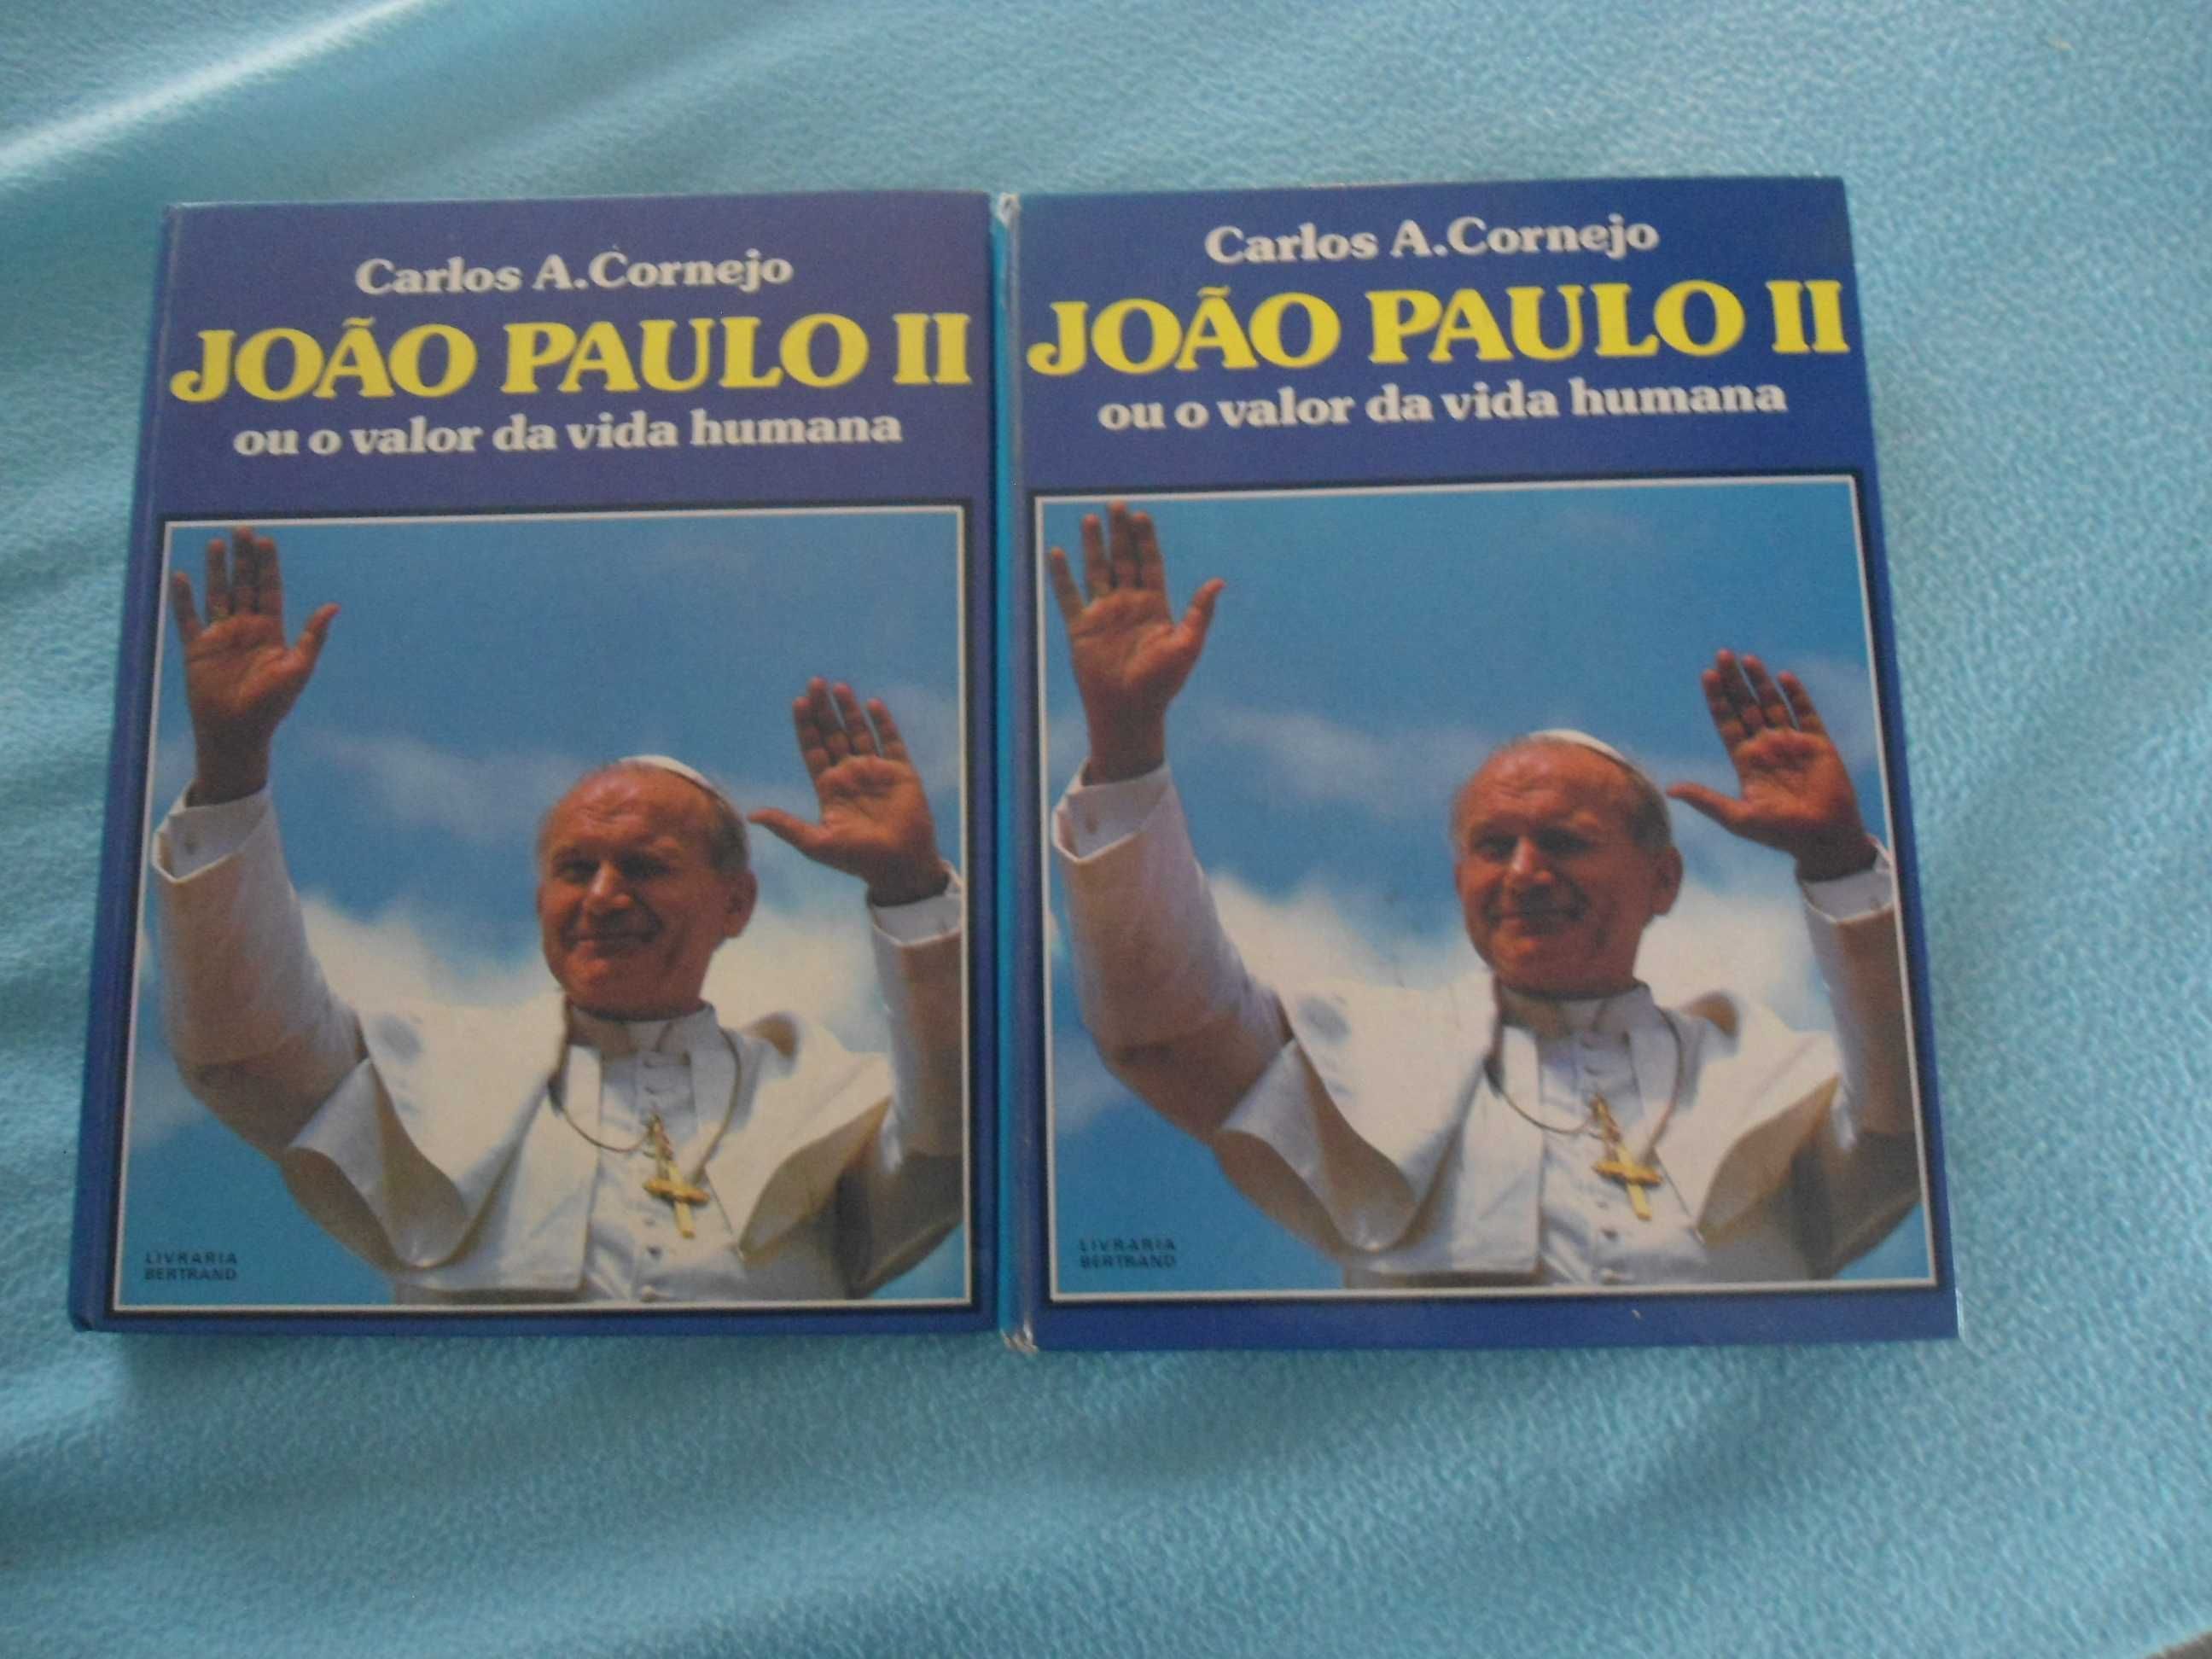 João Paulo II ou o valor da vida humana de Carlos A. Cornejo